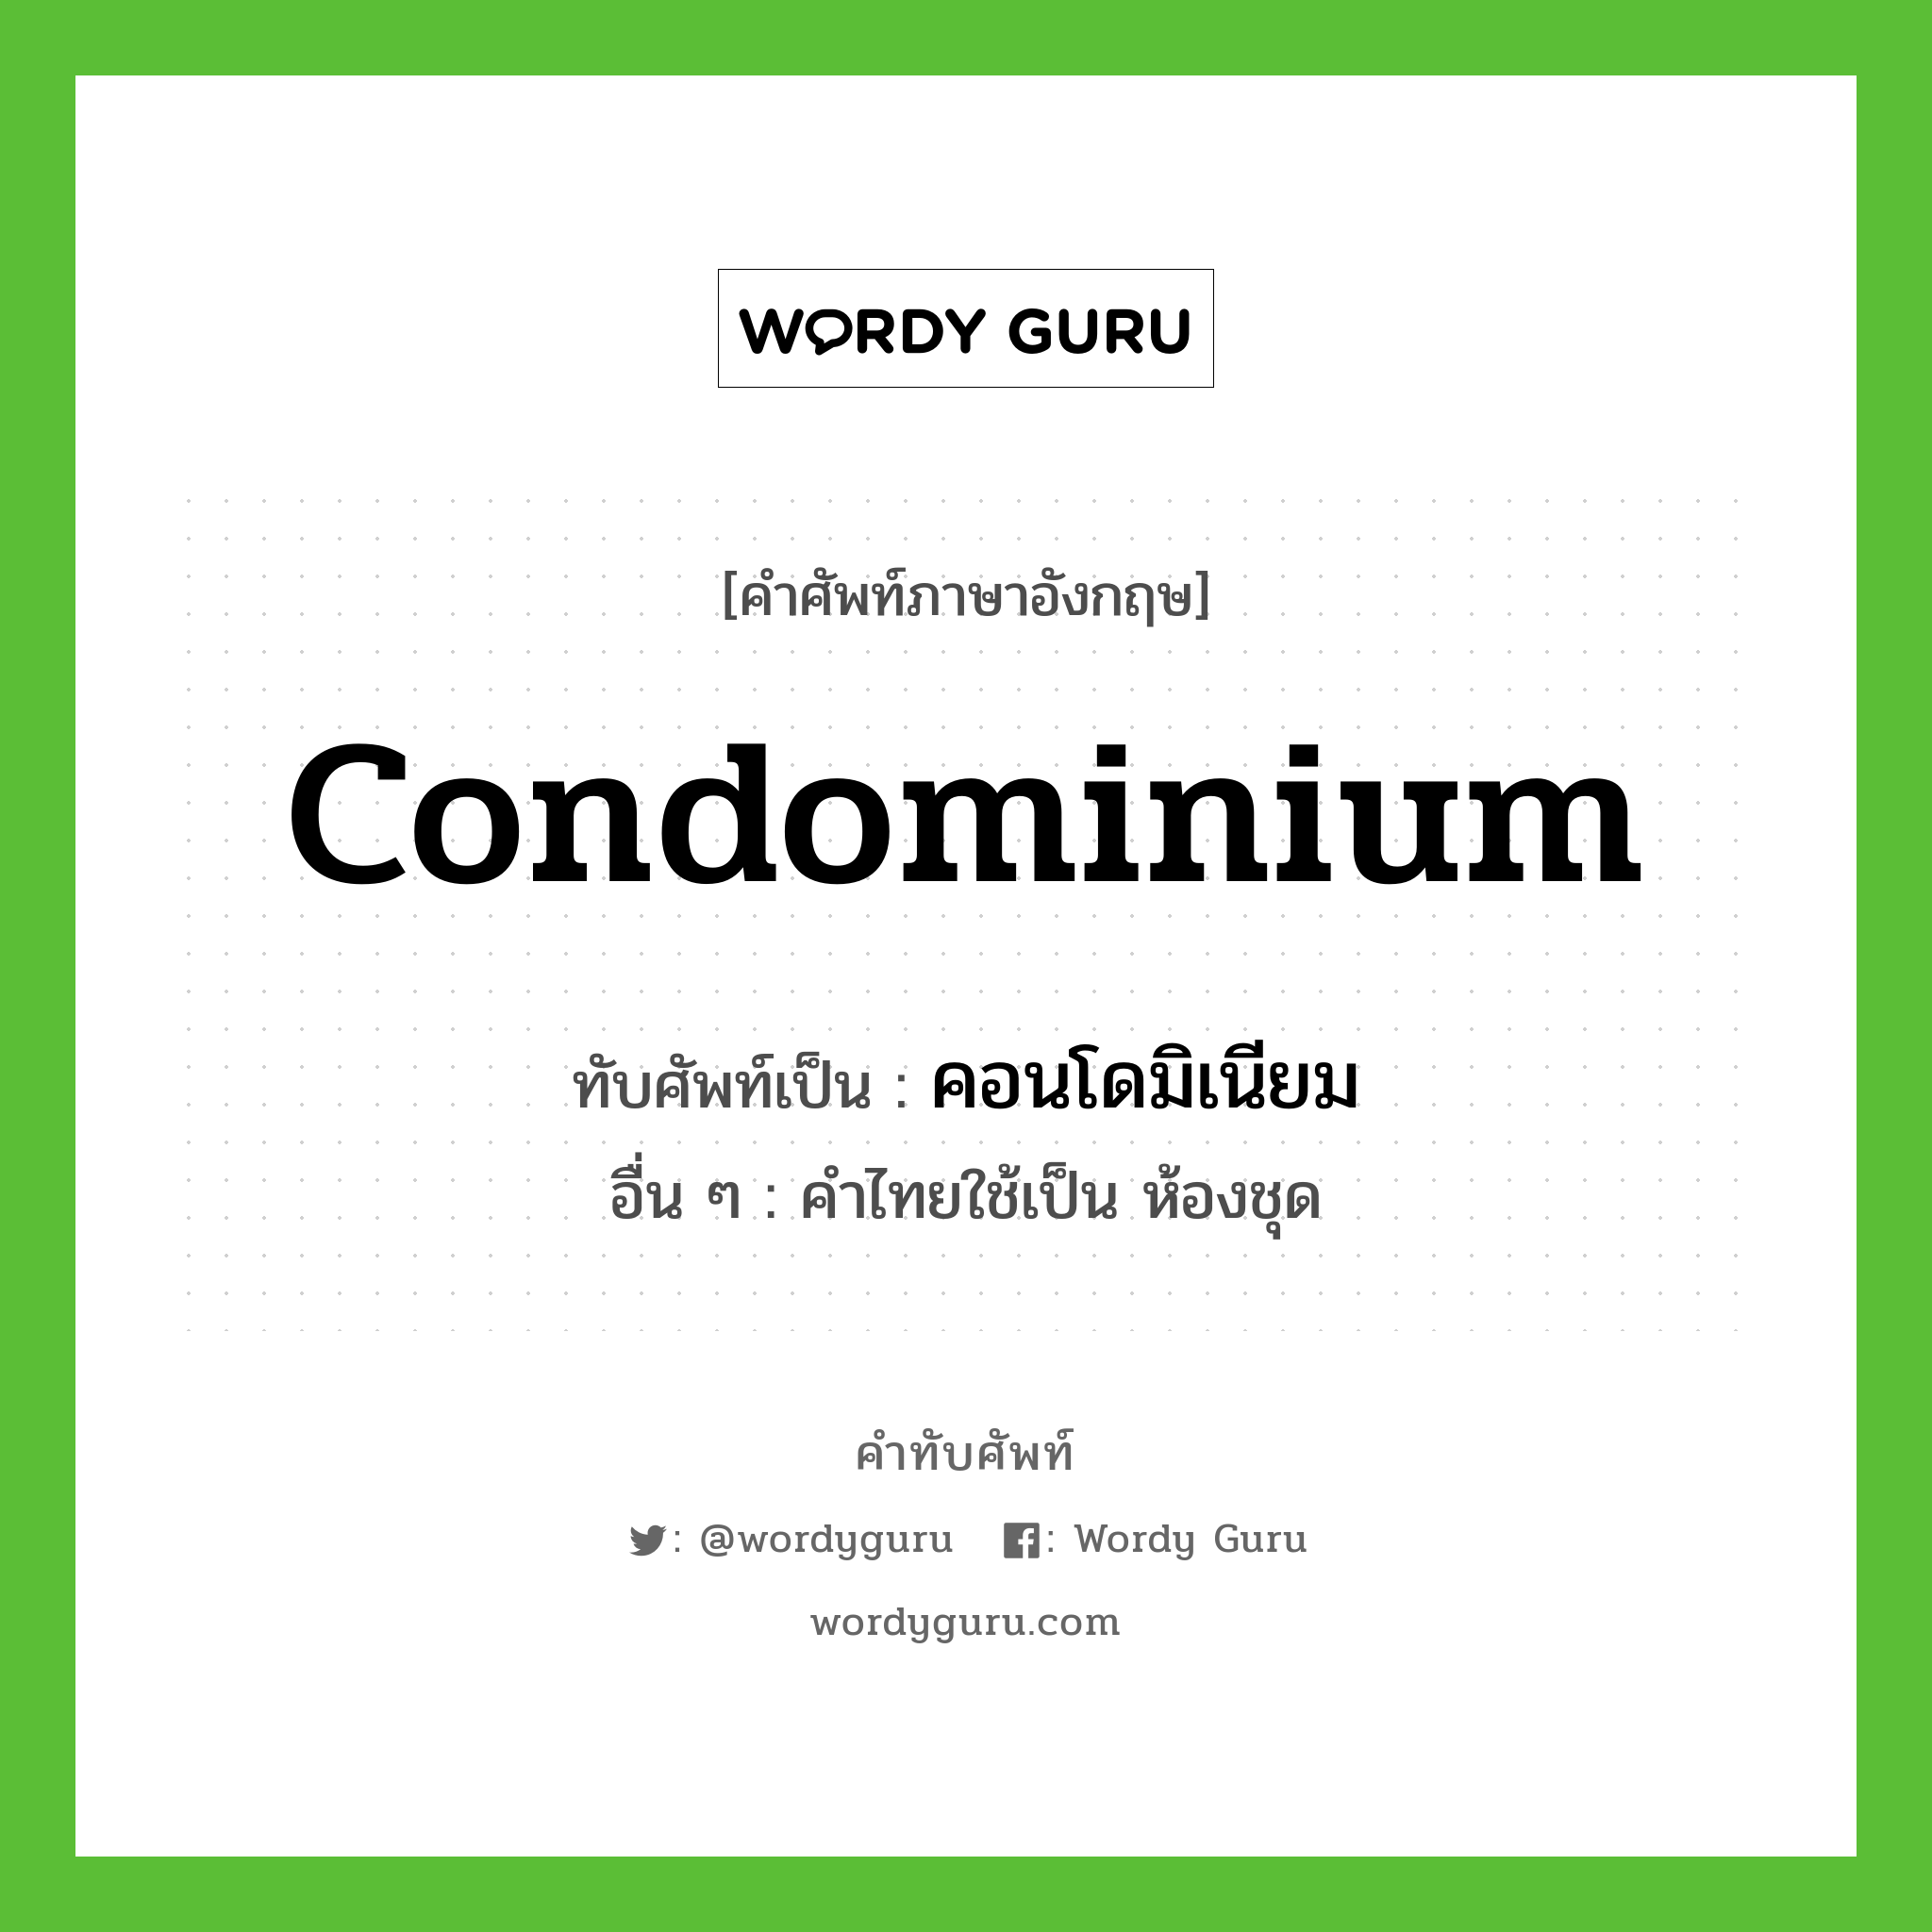 condominium เขียนเป็นคำไทยว่าอะไร?, คำศัพท์ภาษาอังกฤษ condominium ทับศัพท์เป็น คอนโดมิเนียม อื่น ๆ คำไทยใช้เป็น ห้องชุด